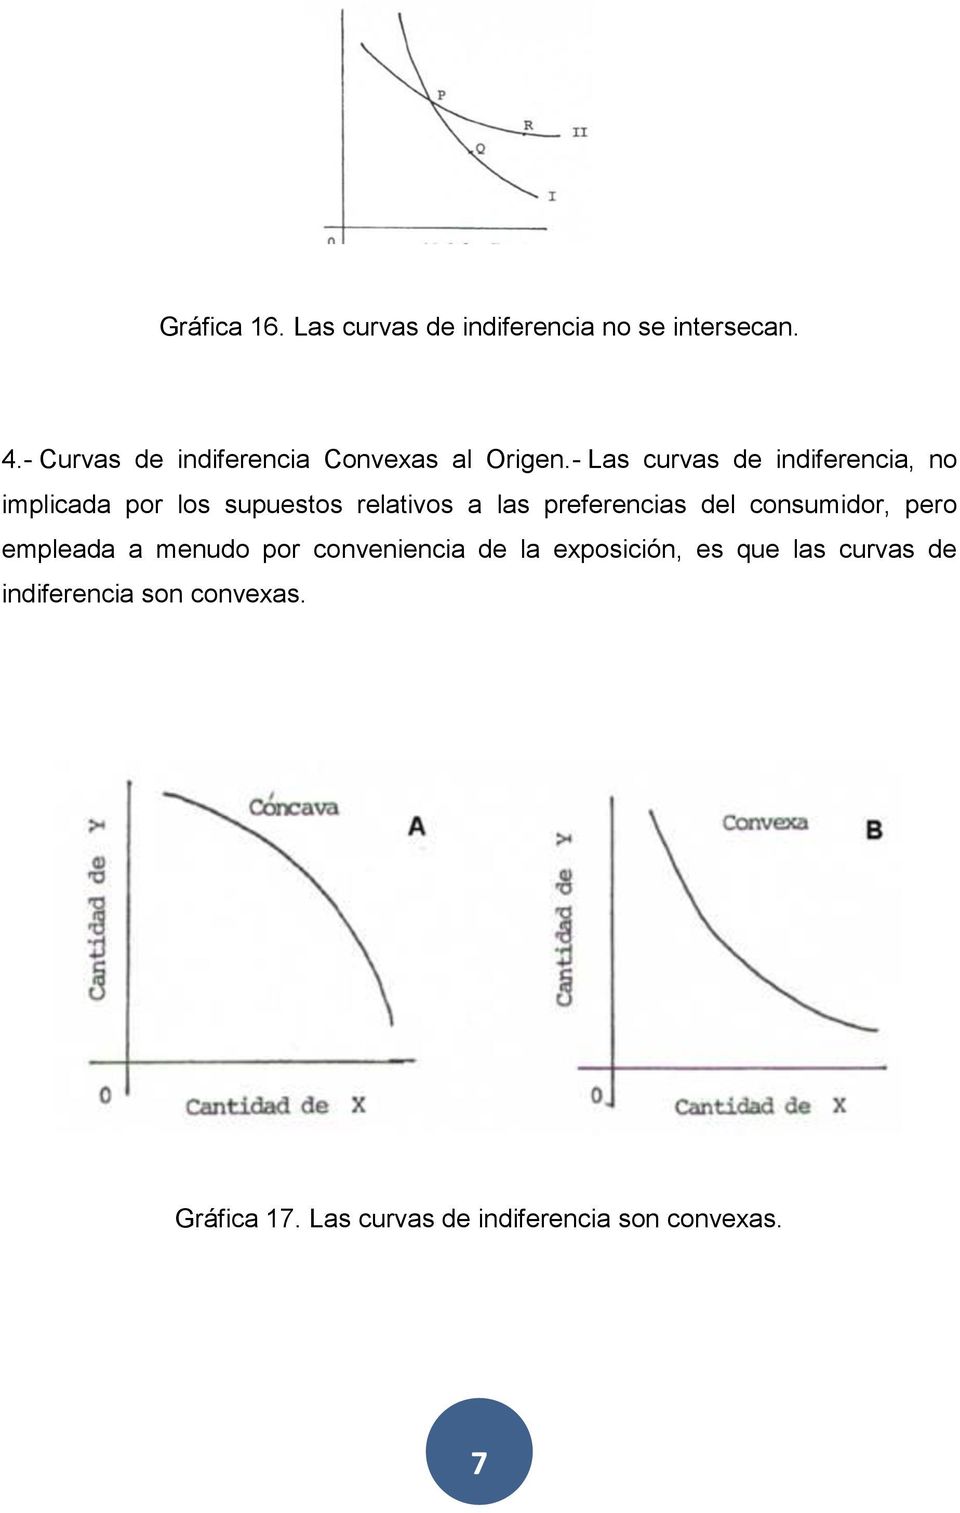 - Las curvas de indiferencia, no implicada por los supuestos relativos a las preferencias